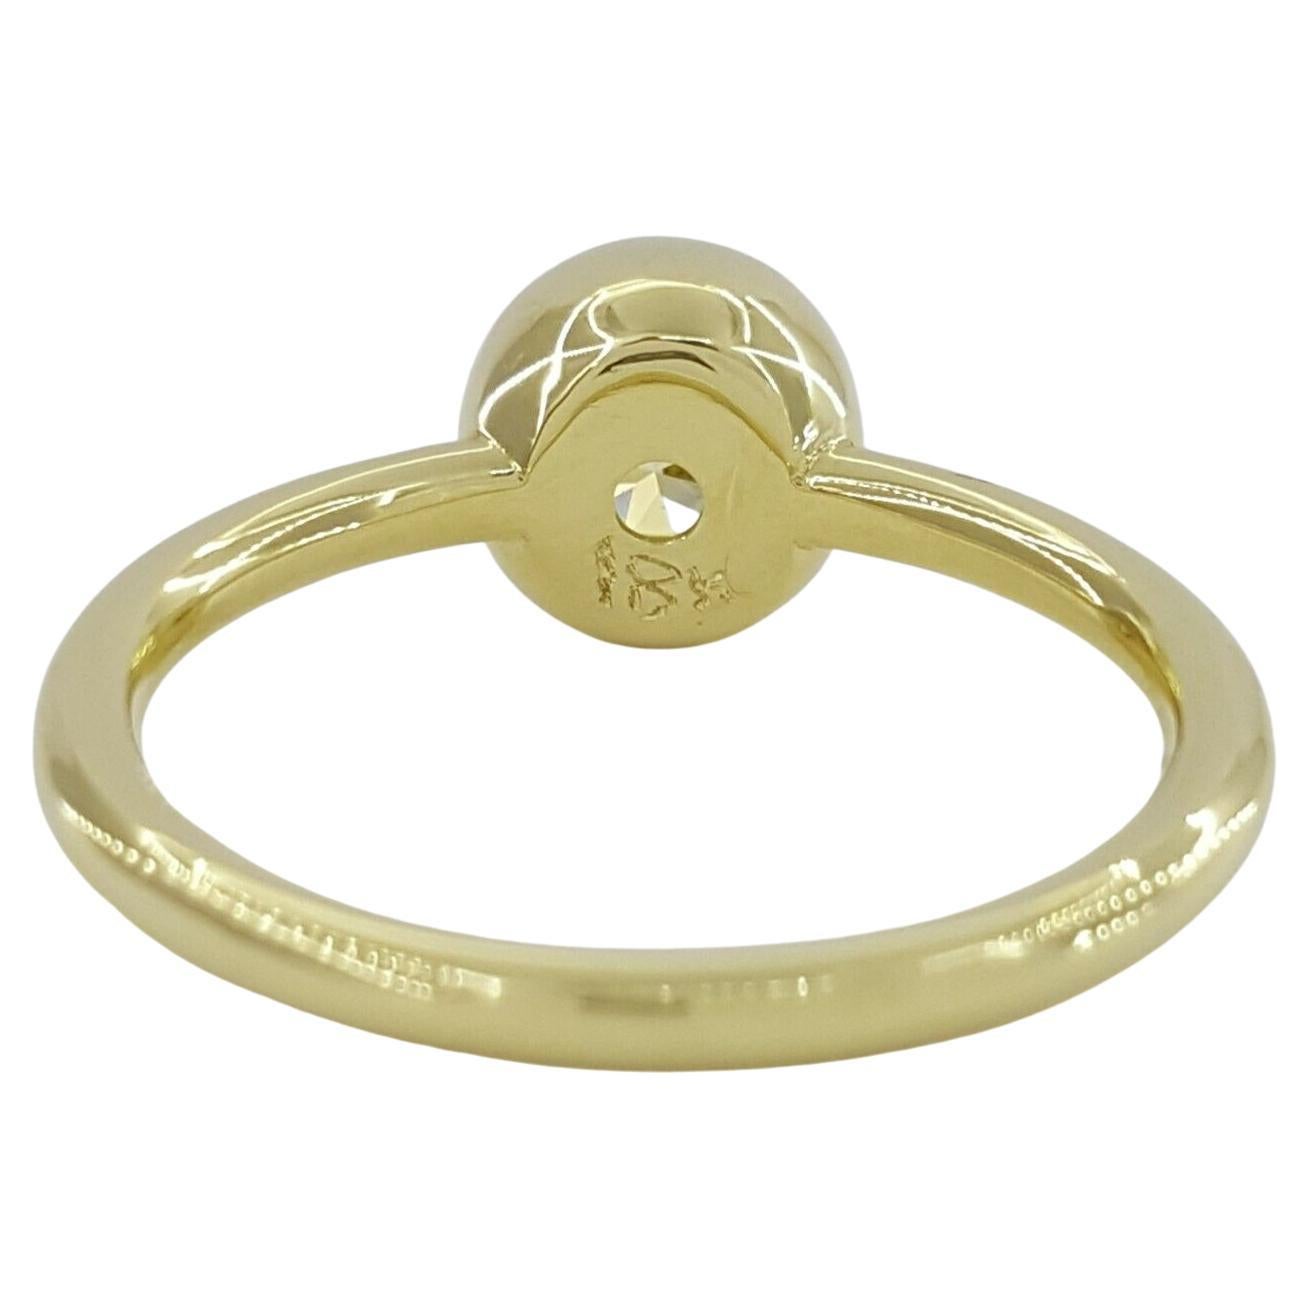 Emerald Cut GIA Certified Fancy Light Yellow 18 Carat Yellow Gold Diamond Ring